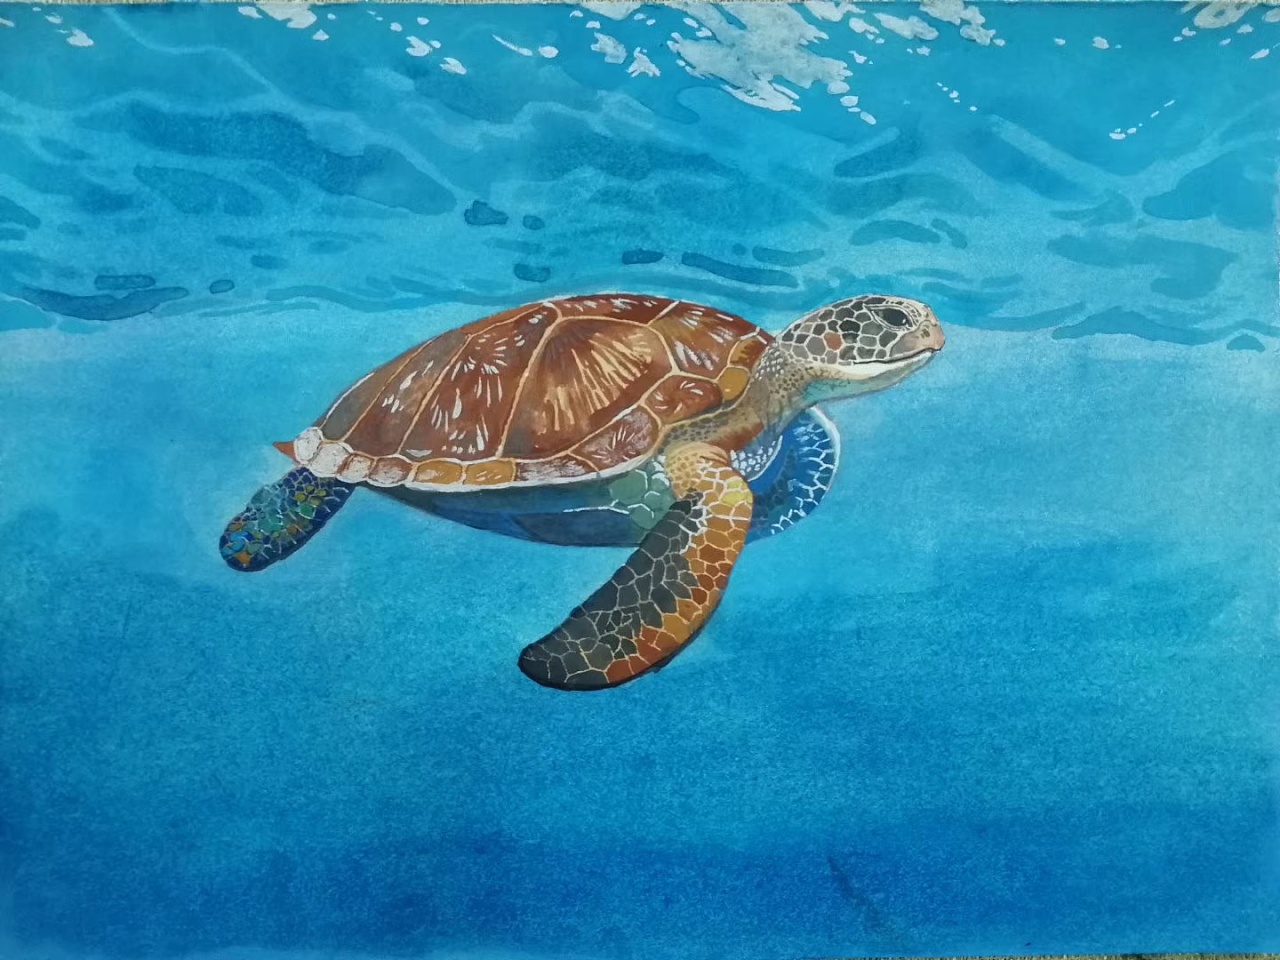 海底世界墙绘海龟图片